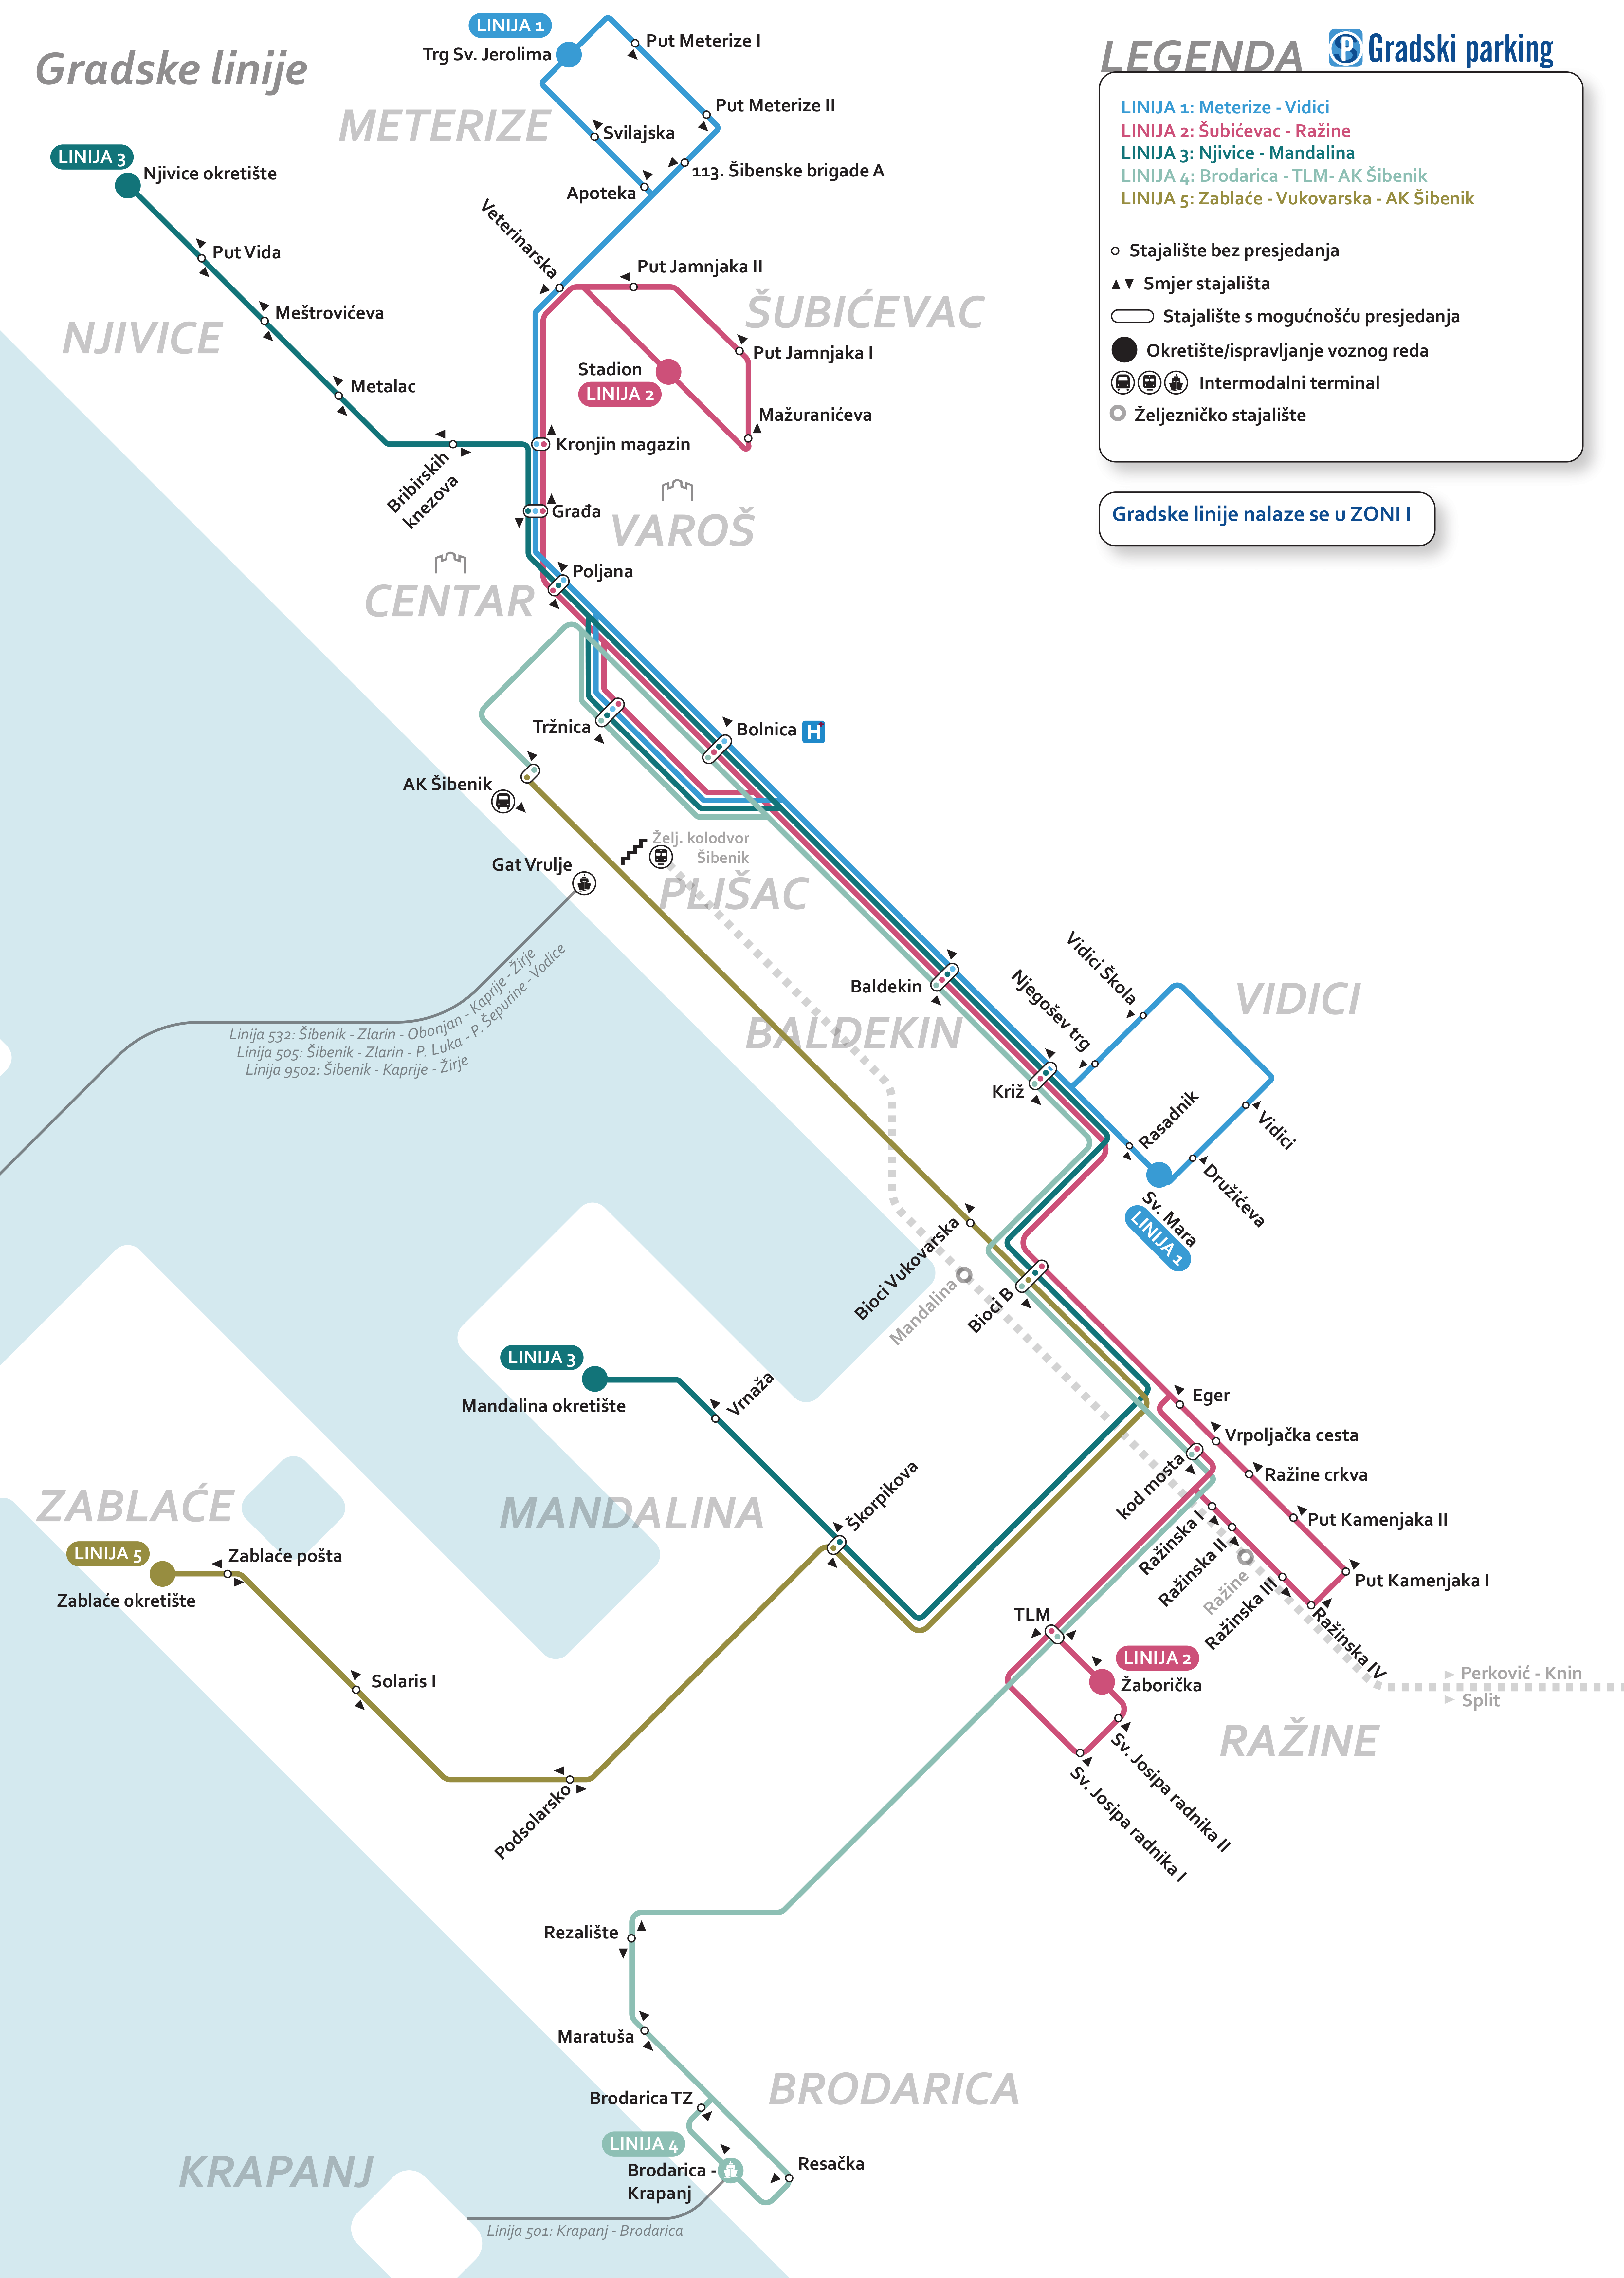 Javni gradski prijevoz - detaljni opis linija